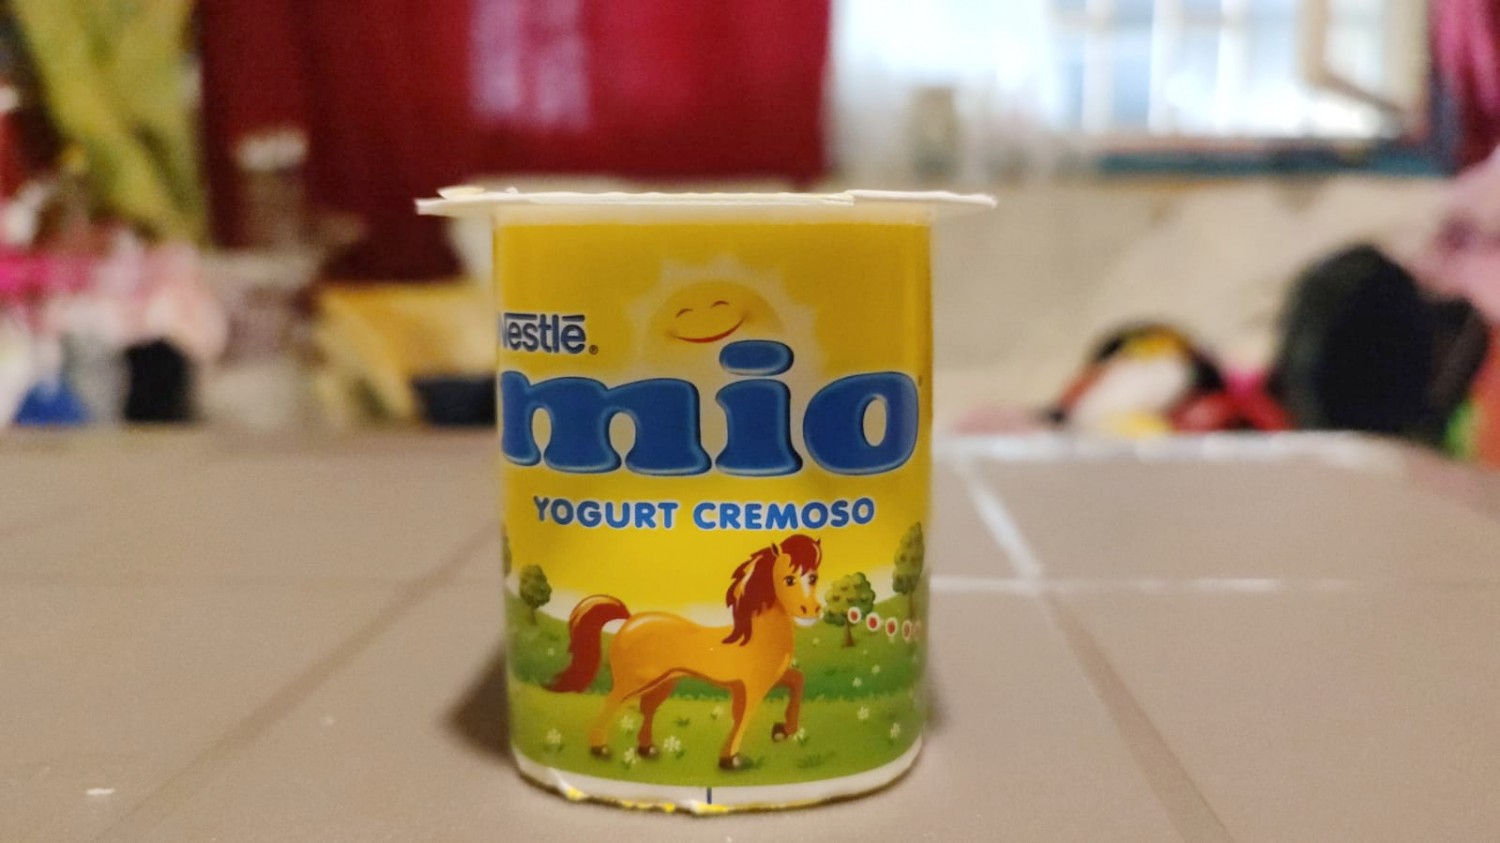 Mio Yogurt Cremoso Banana - MammacheTest